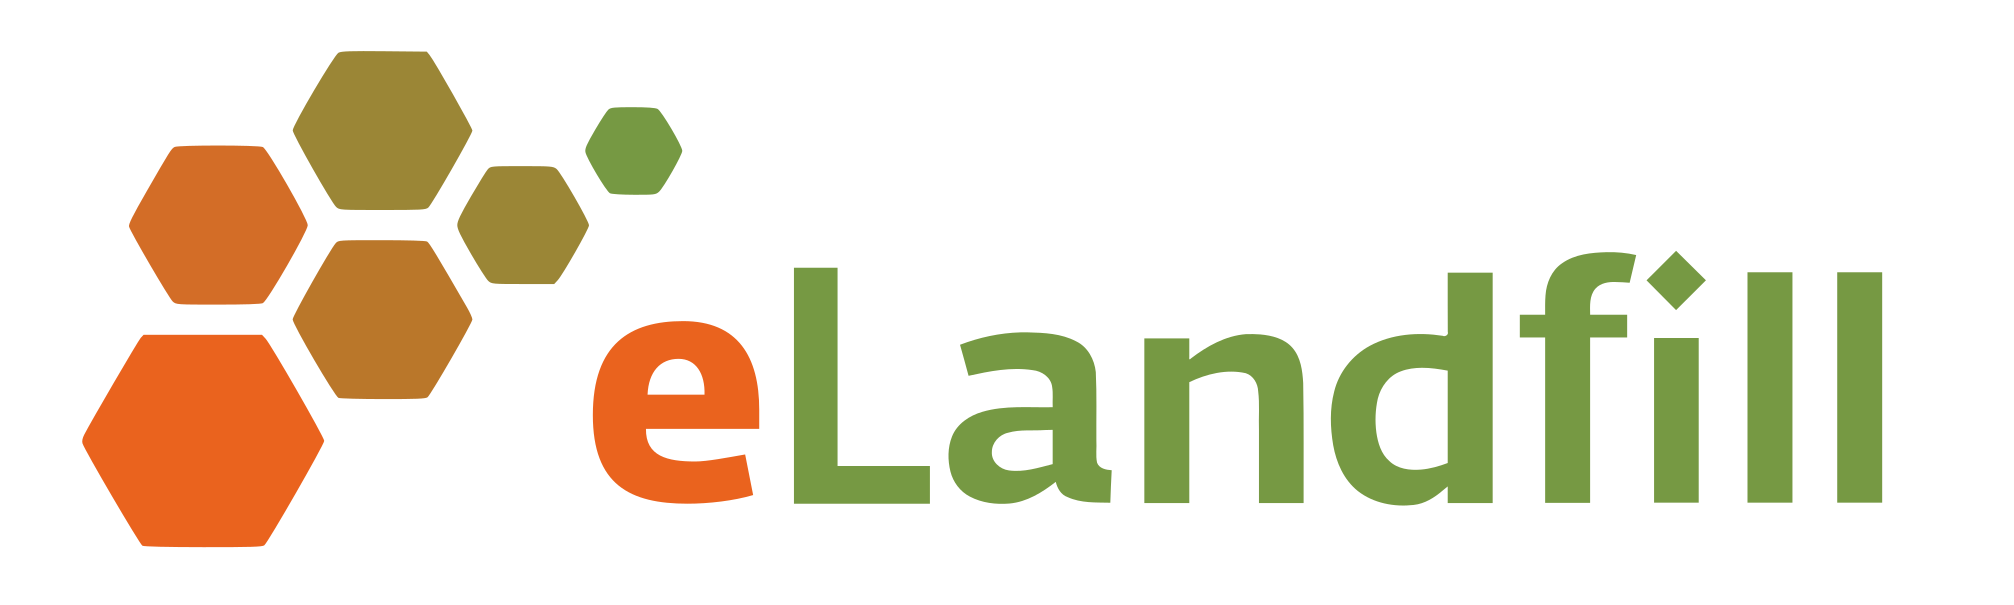 eLandfill - Digital platform for landfill operation